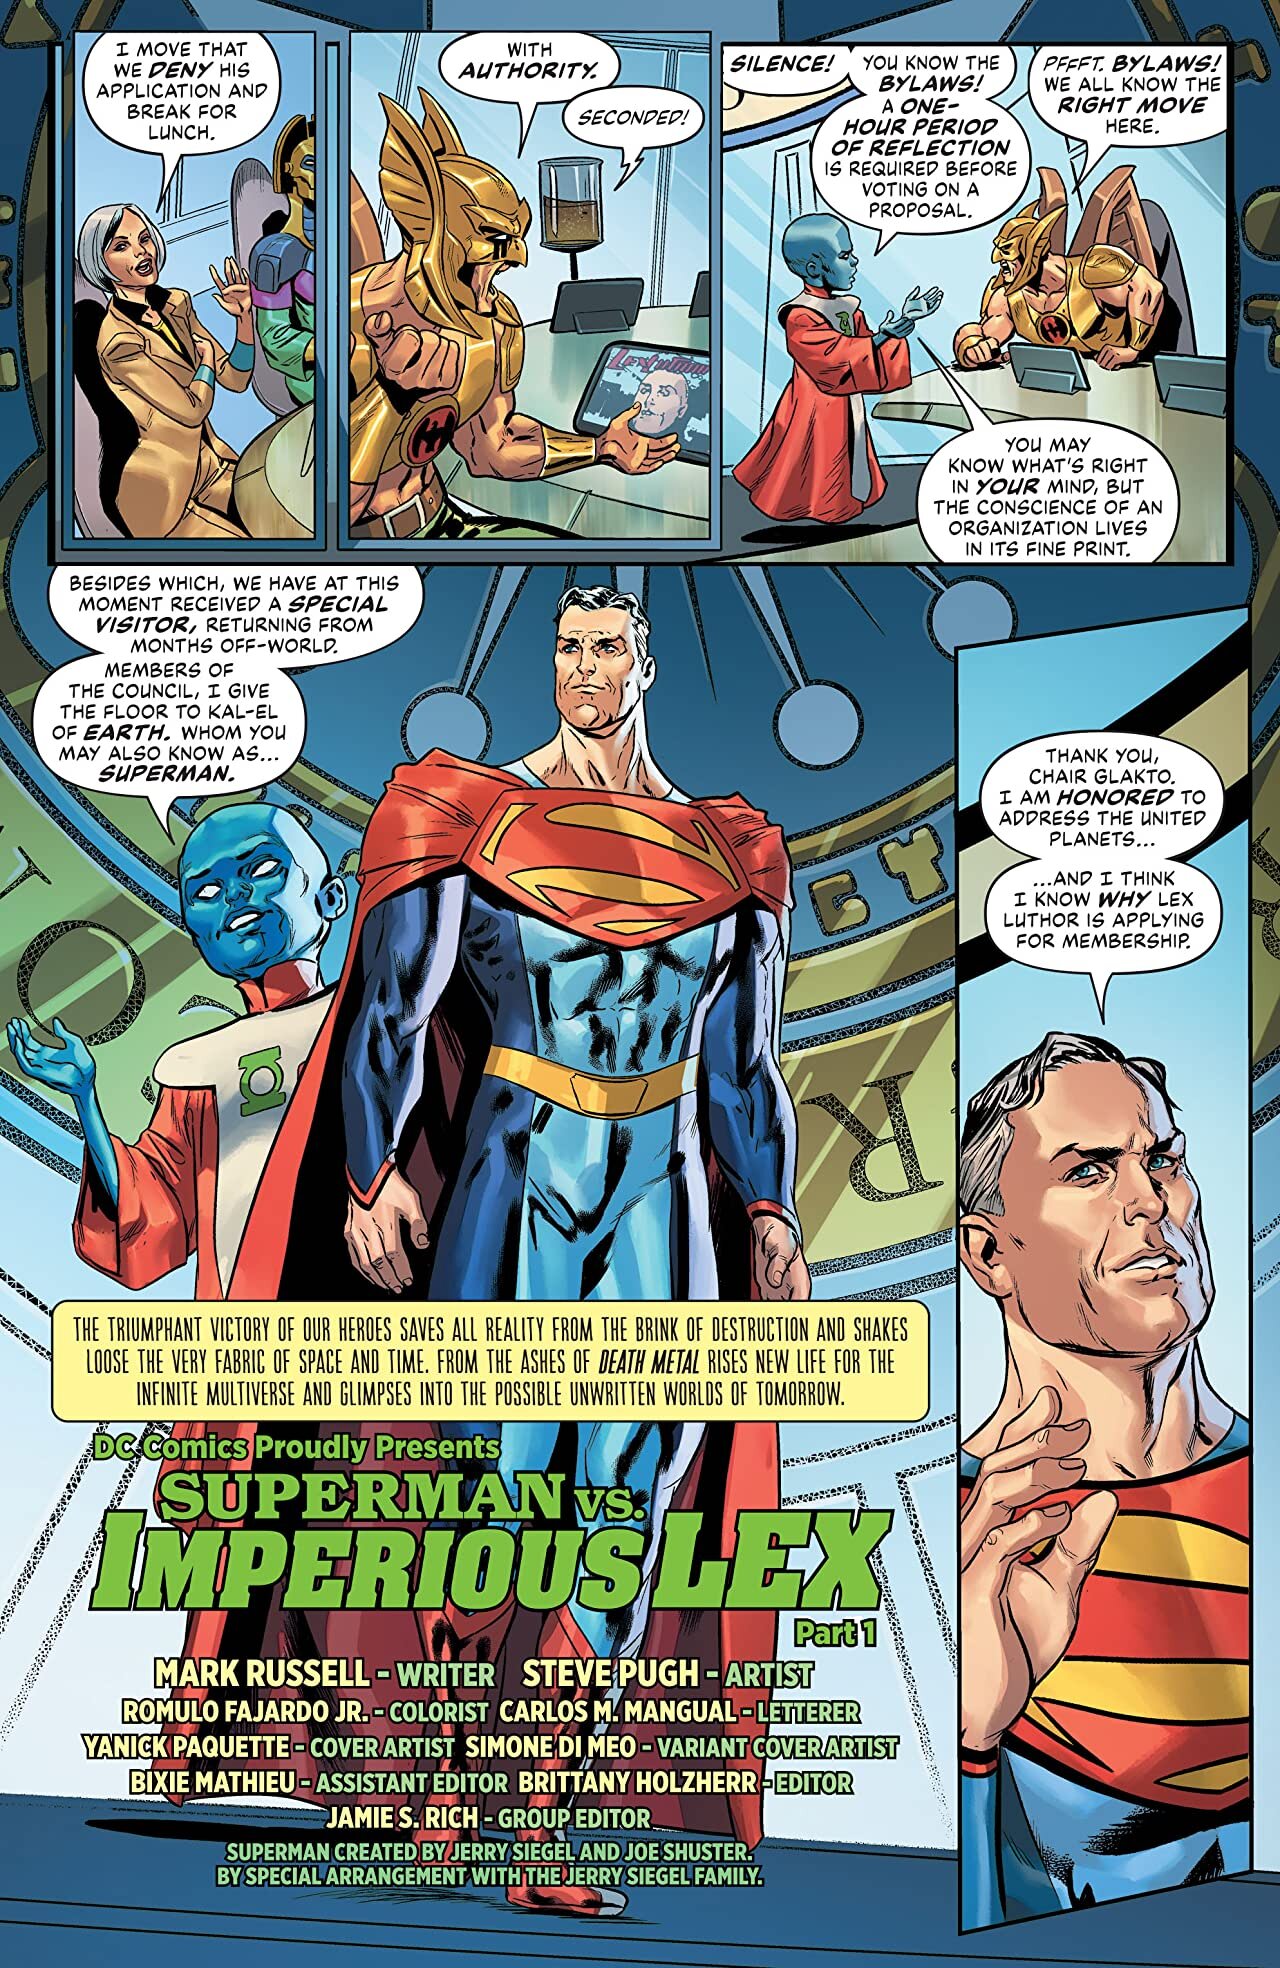 STTGL vs Superman Prime One-million - Battles - Comic Vine